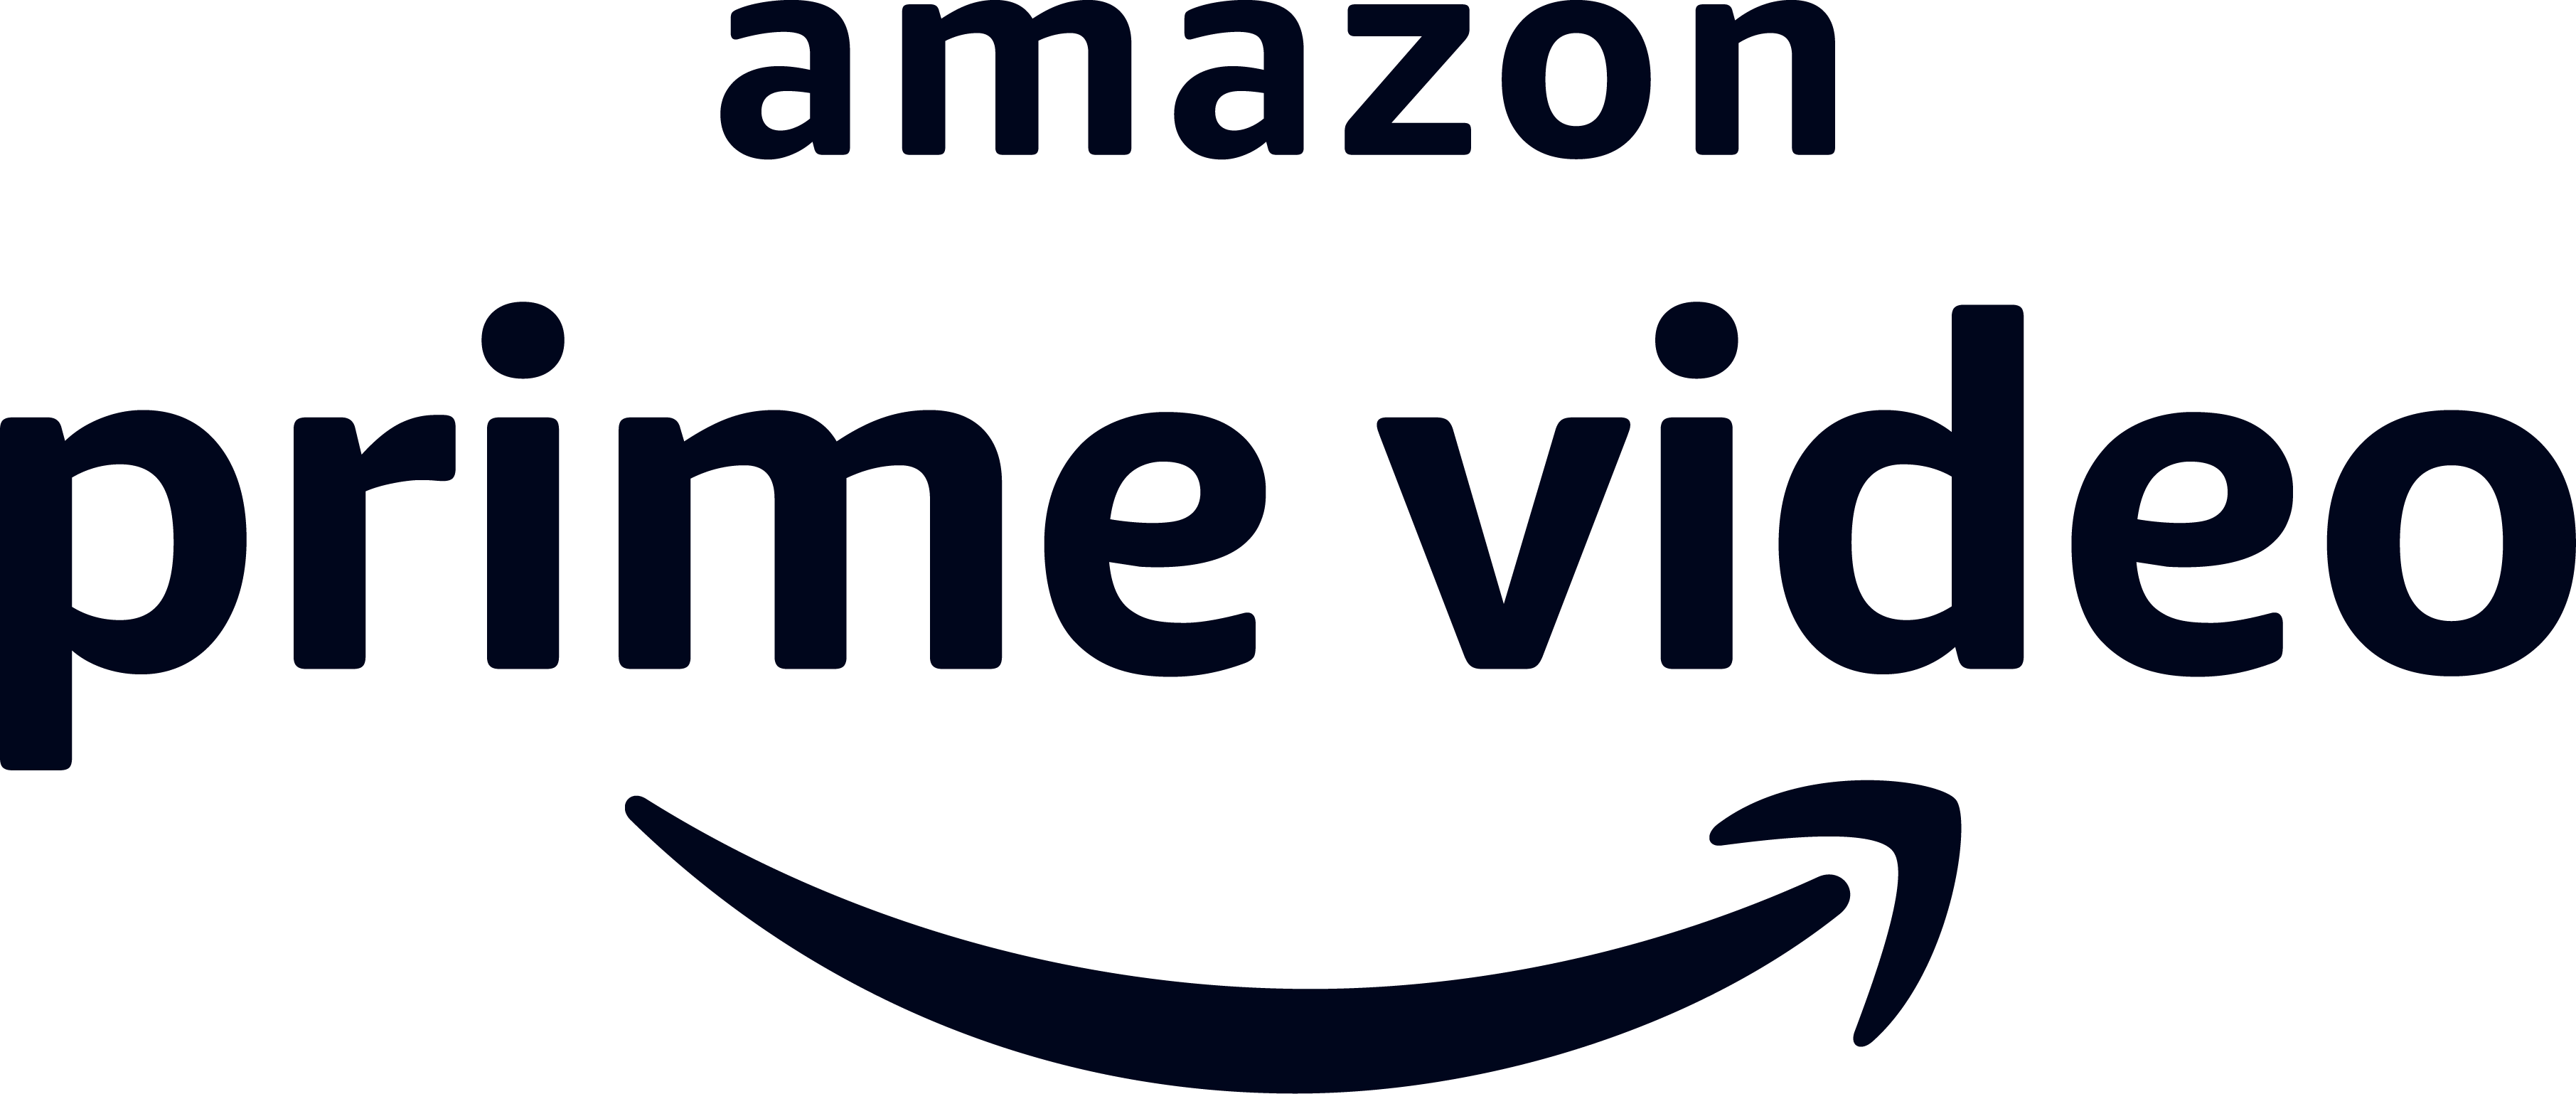 第34回東京国際映画祭 Amazon Prime Video Amazon Prime Video テイクワン賞 募集受付開始 第34回東京国際映画祭 21